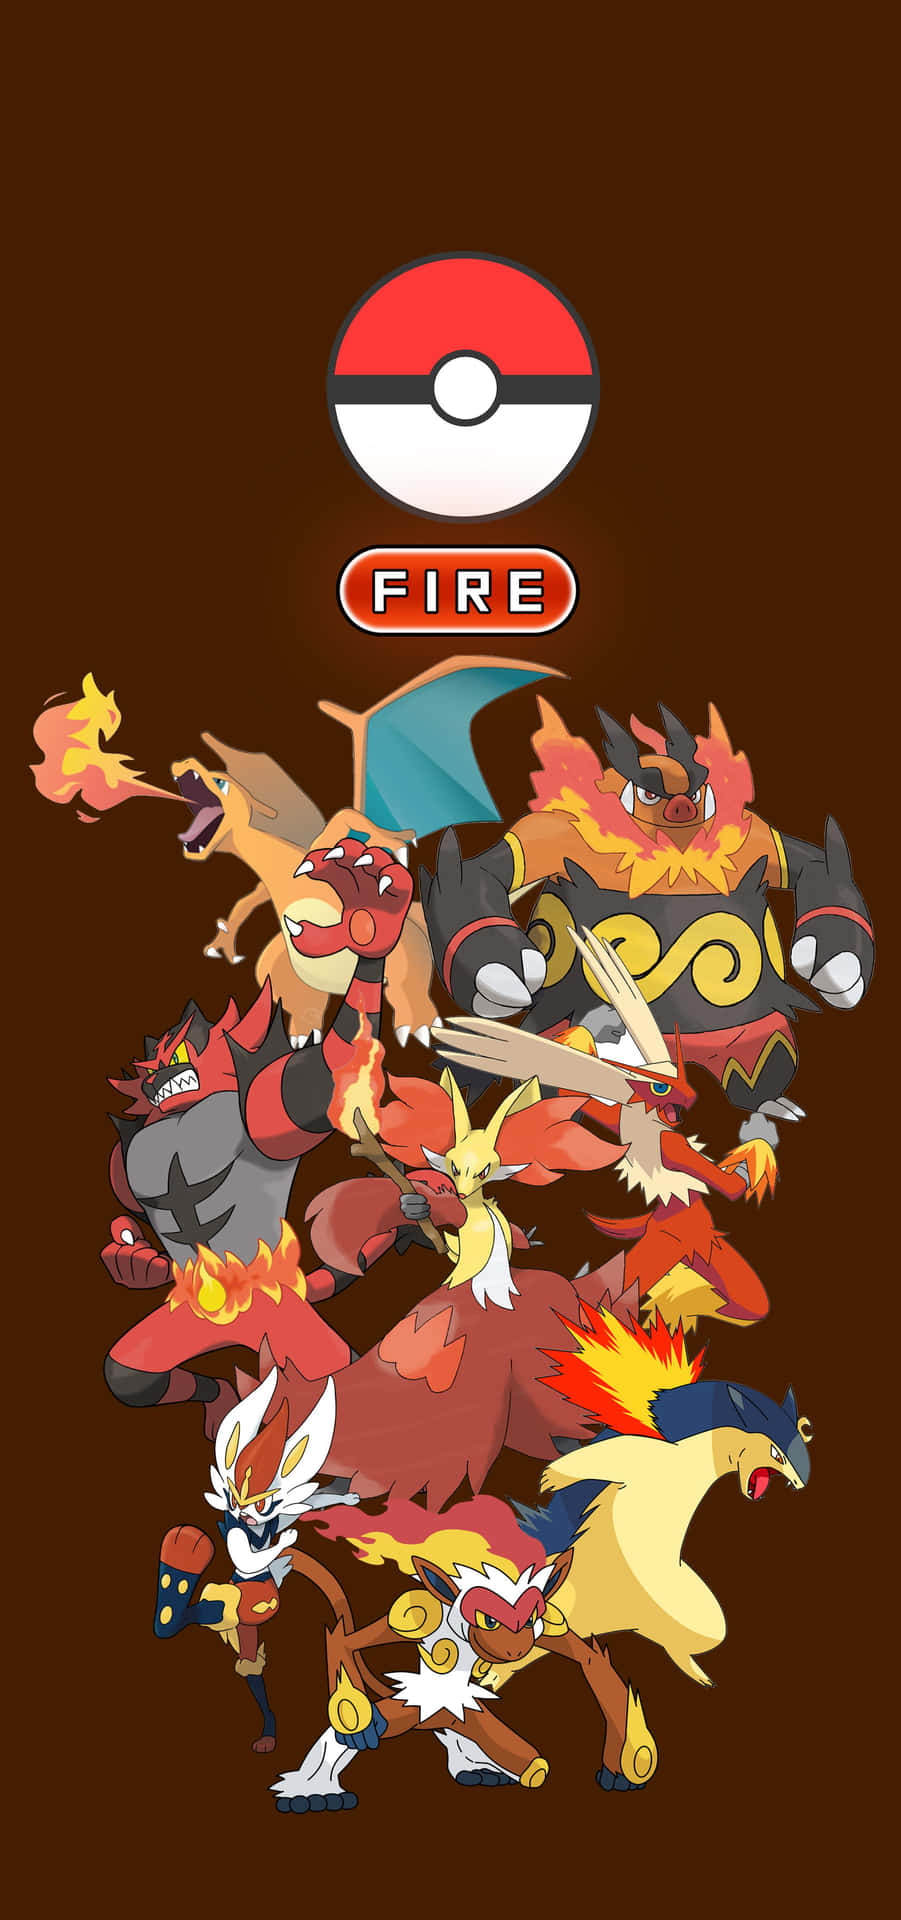 Fire Type Pokemon Assembly